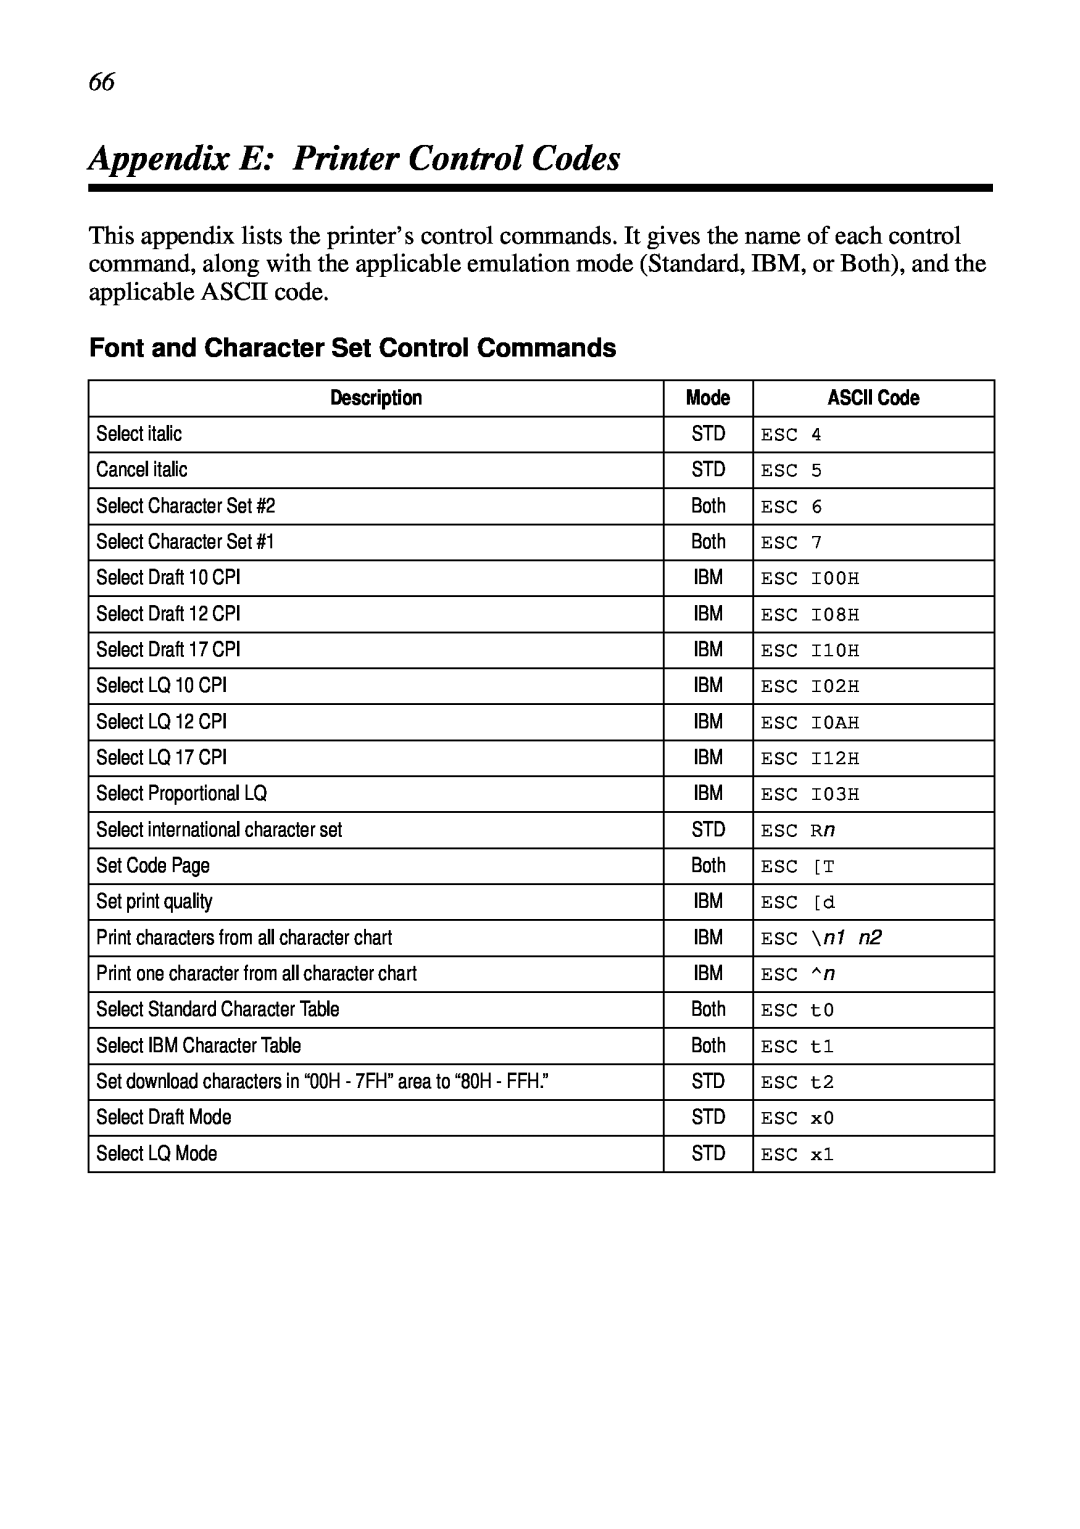 Star Micronics NX-2460C user manual Appendix E Printer Control Codes, Font and Character Set Control Commands 